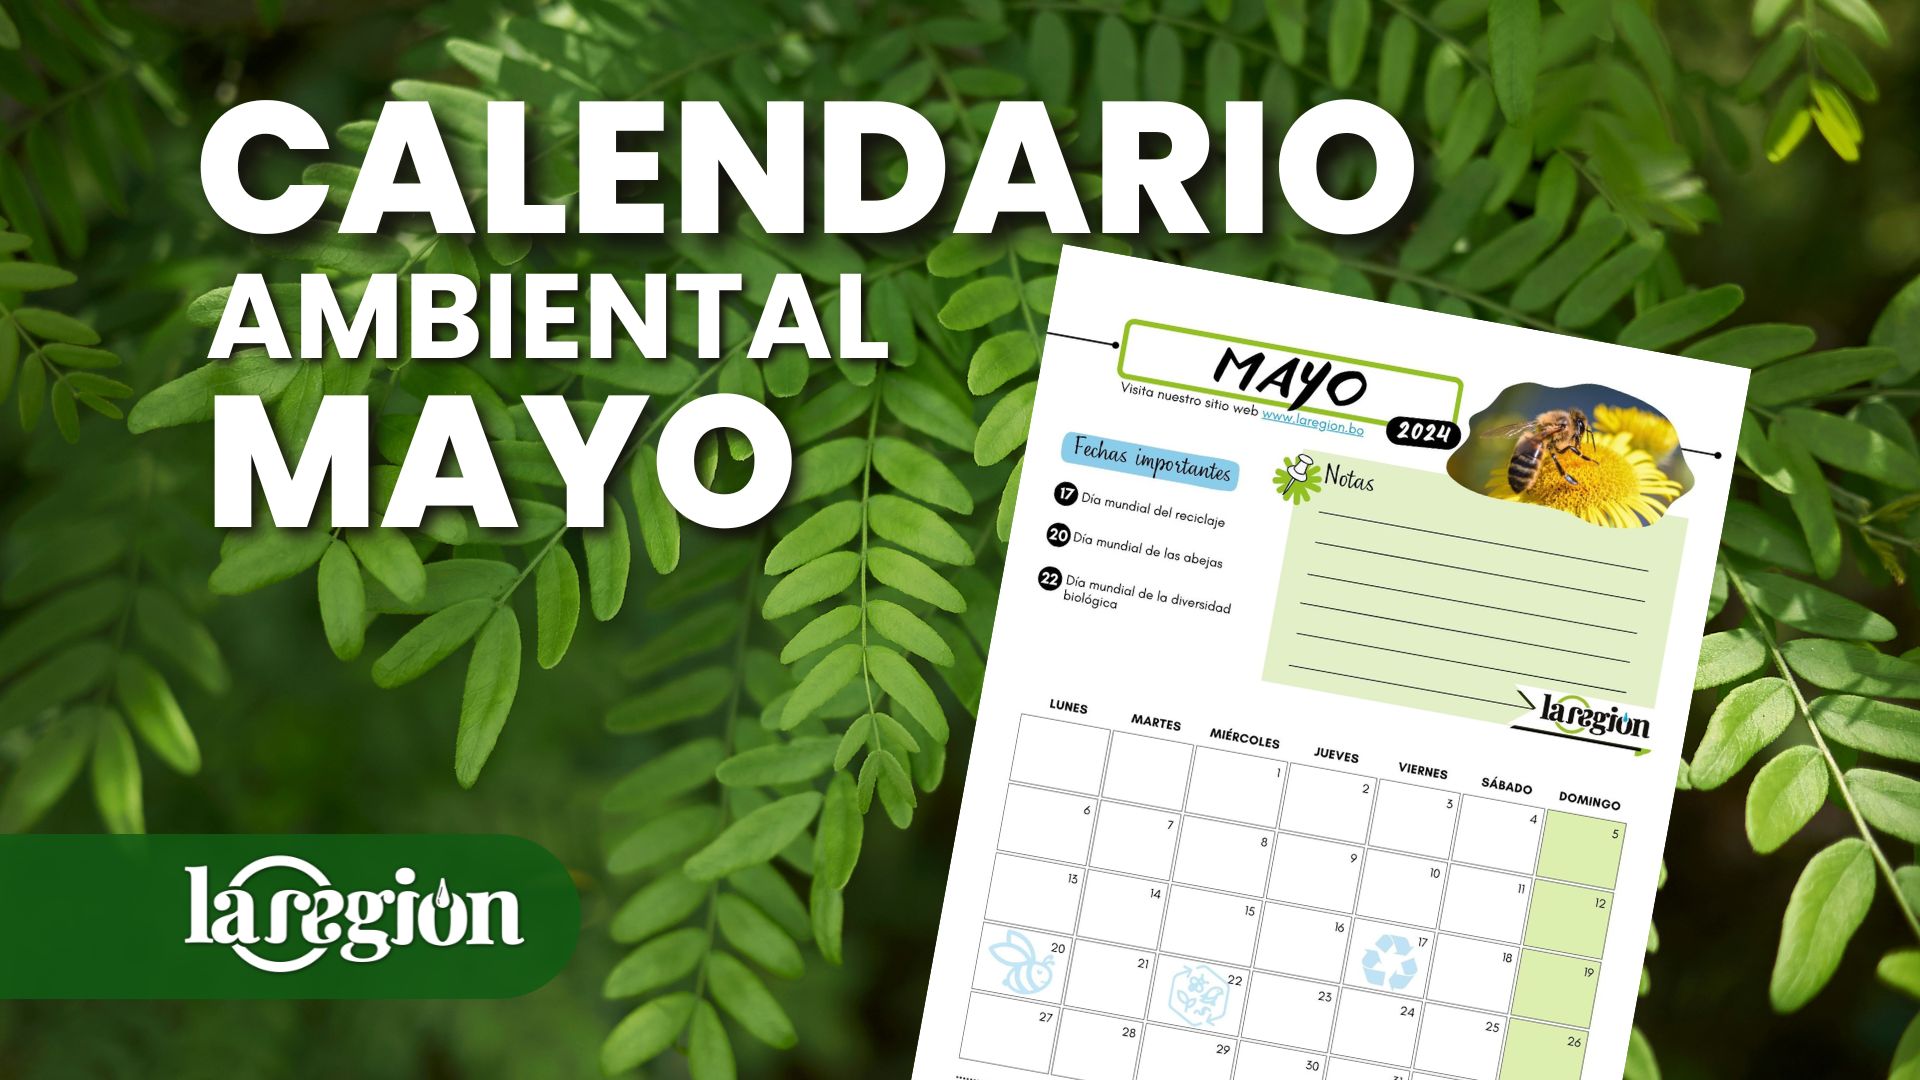 Calendario ambiental de mayo en Bolivia